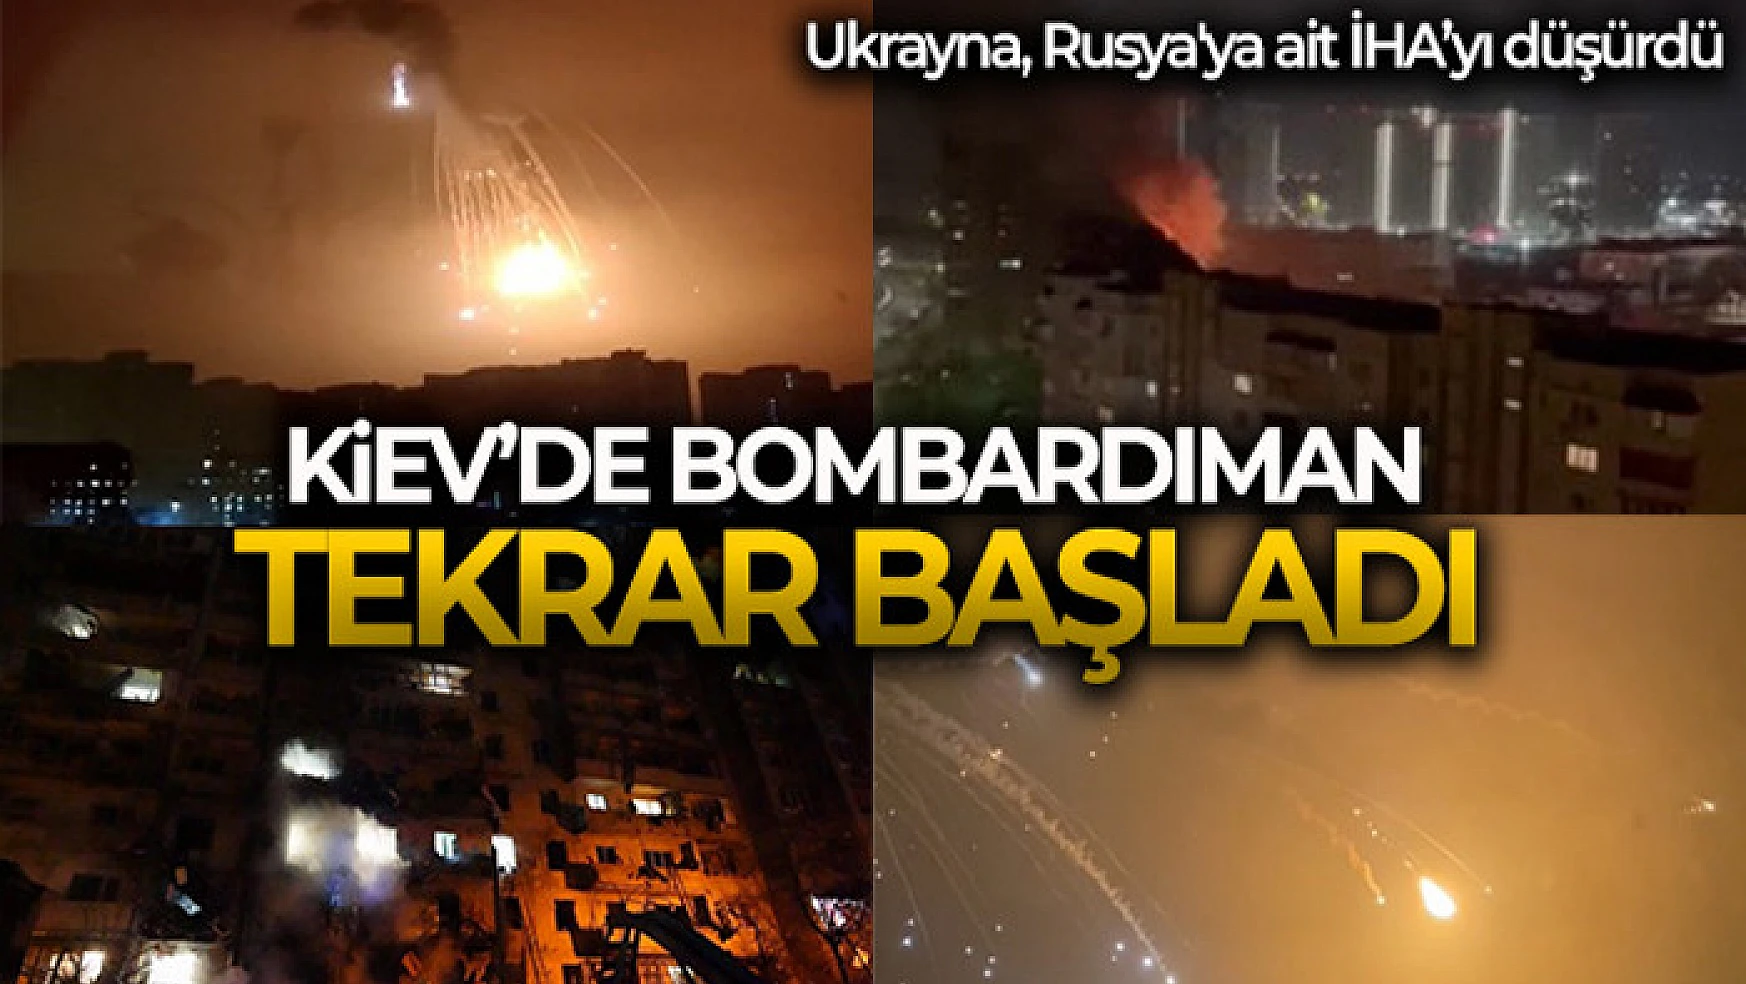 Kiev'de bombardıman tekrar başladı